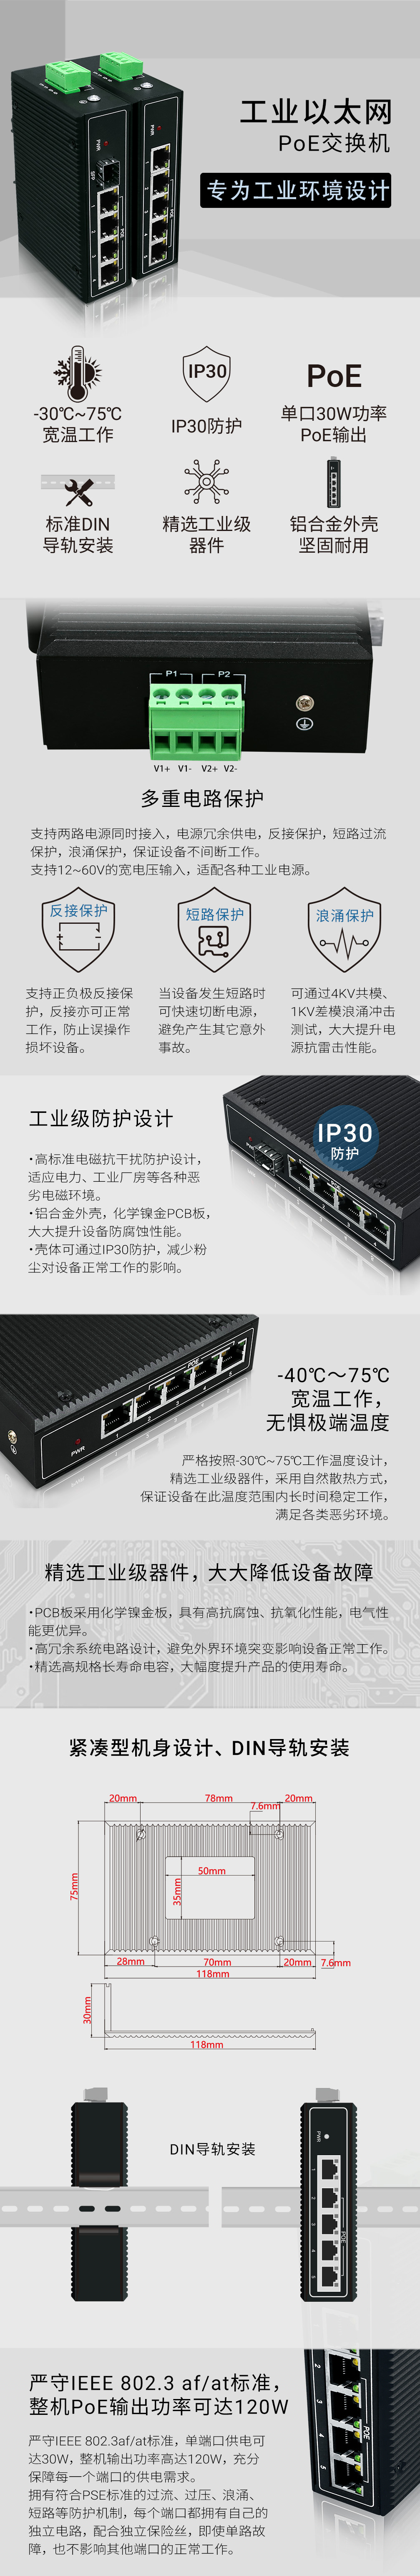 YN-SG105SP工业以太网PoE交换机